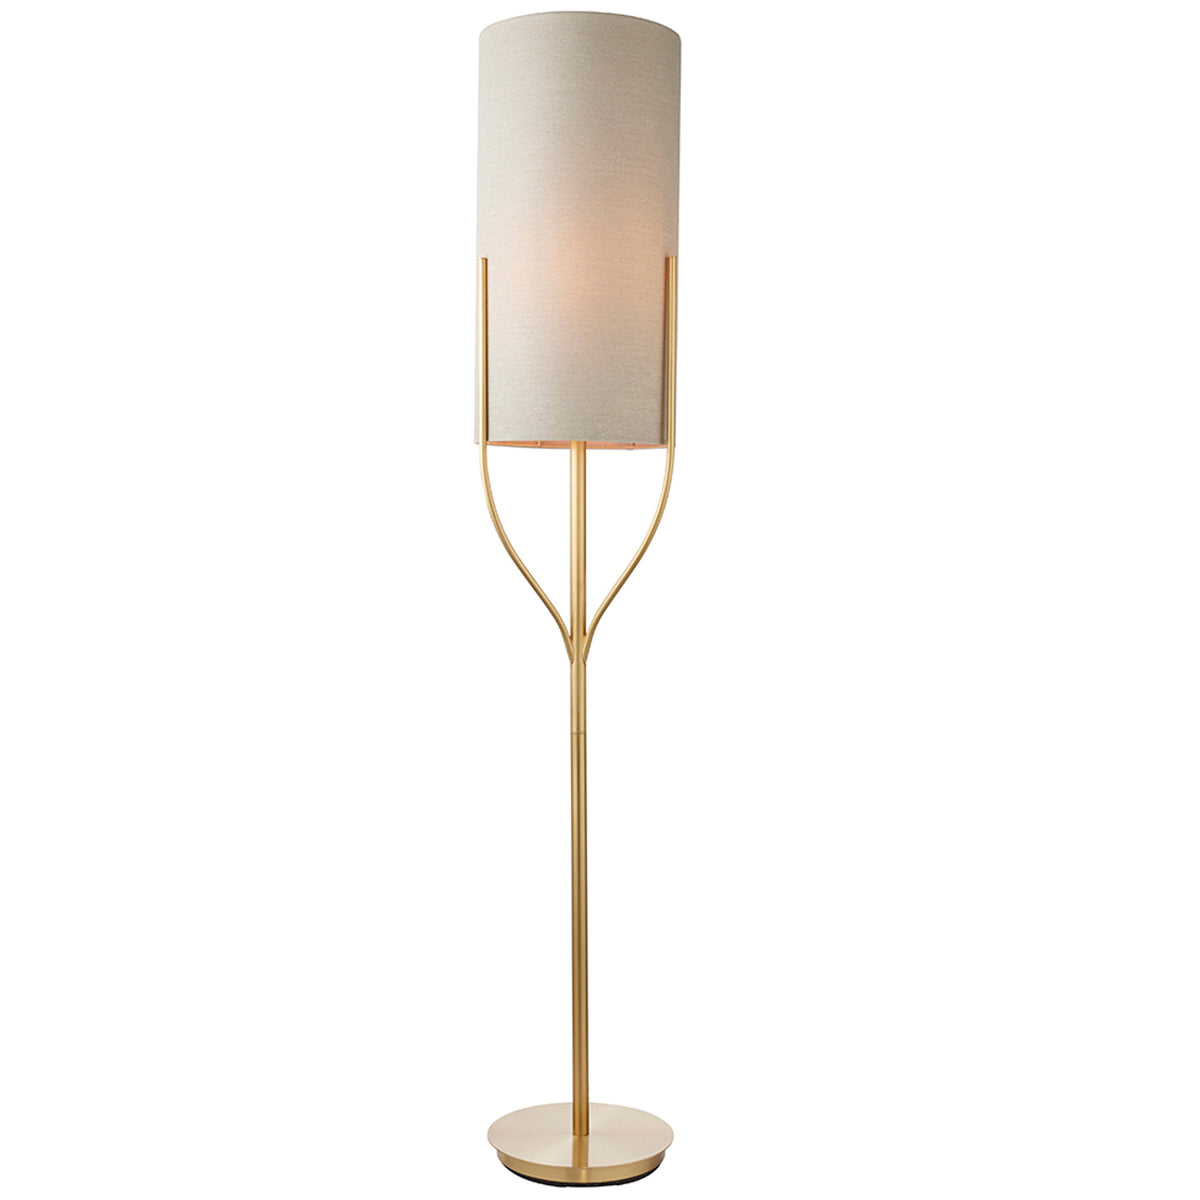 Cambridge Cylinder Floor Lamp, Satin Brass